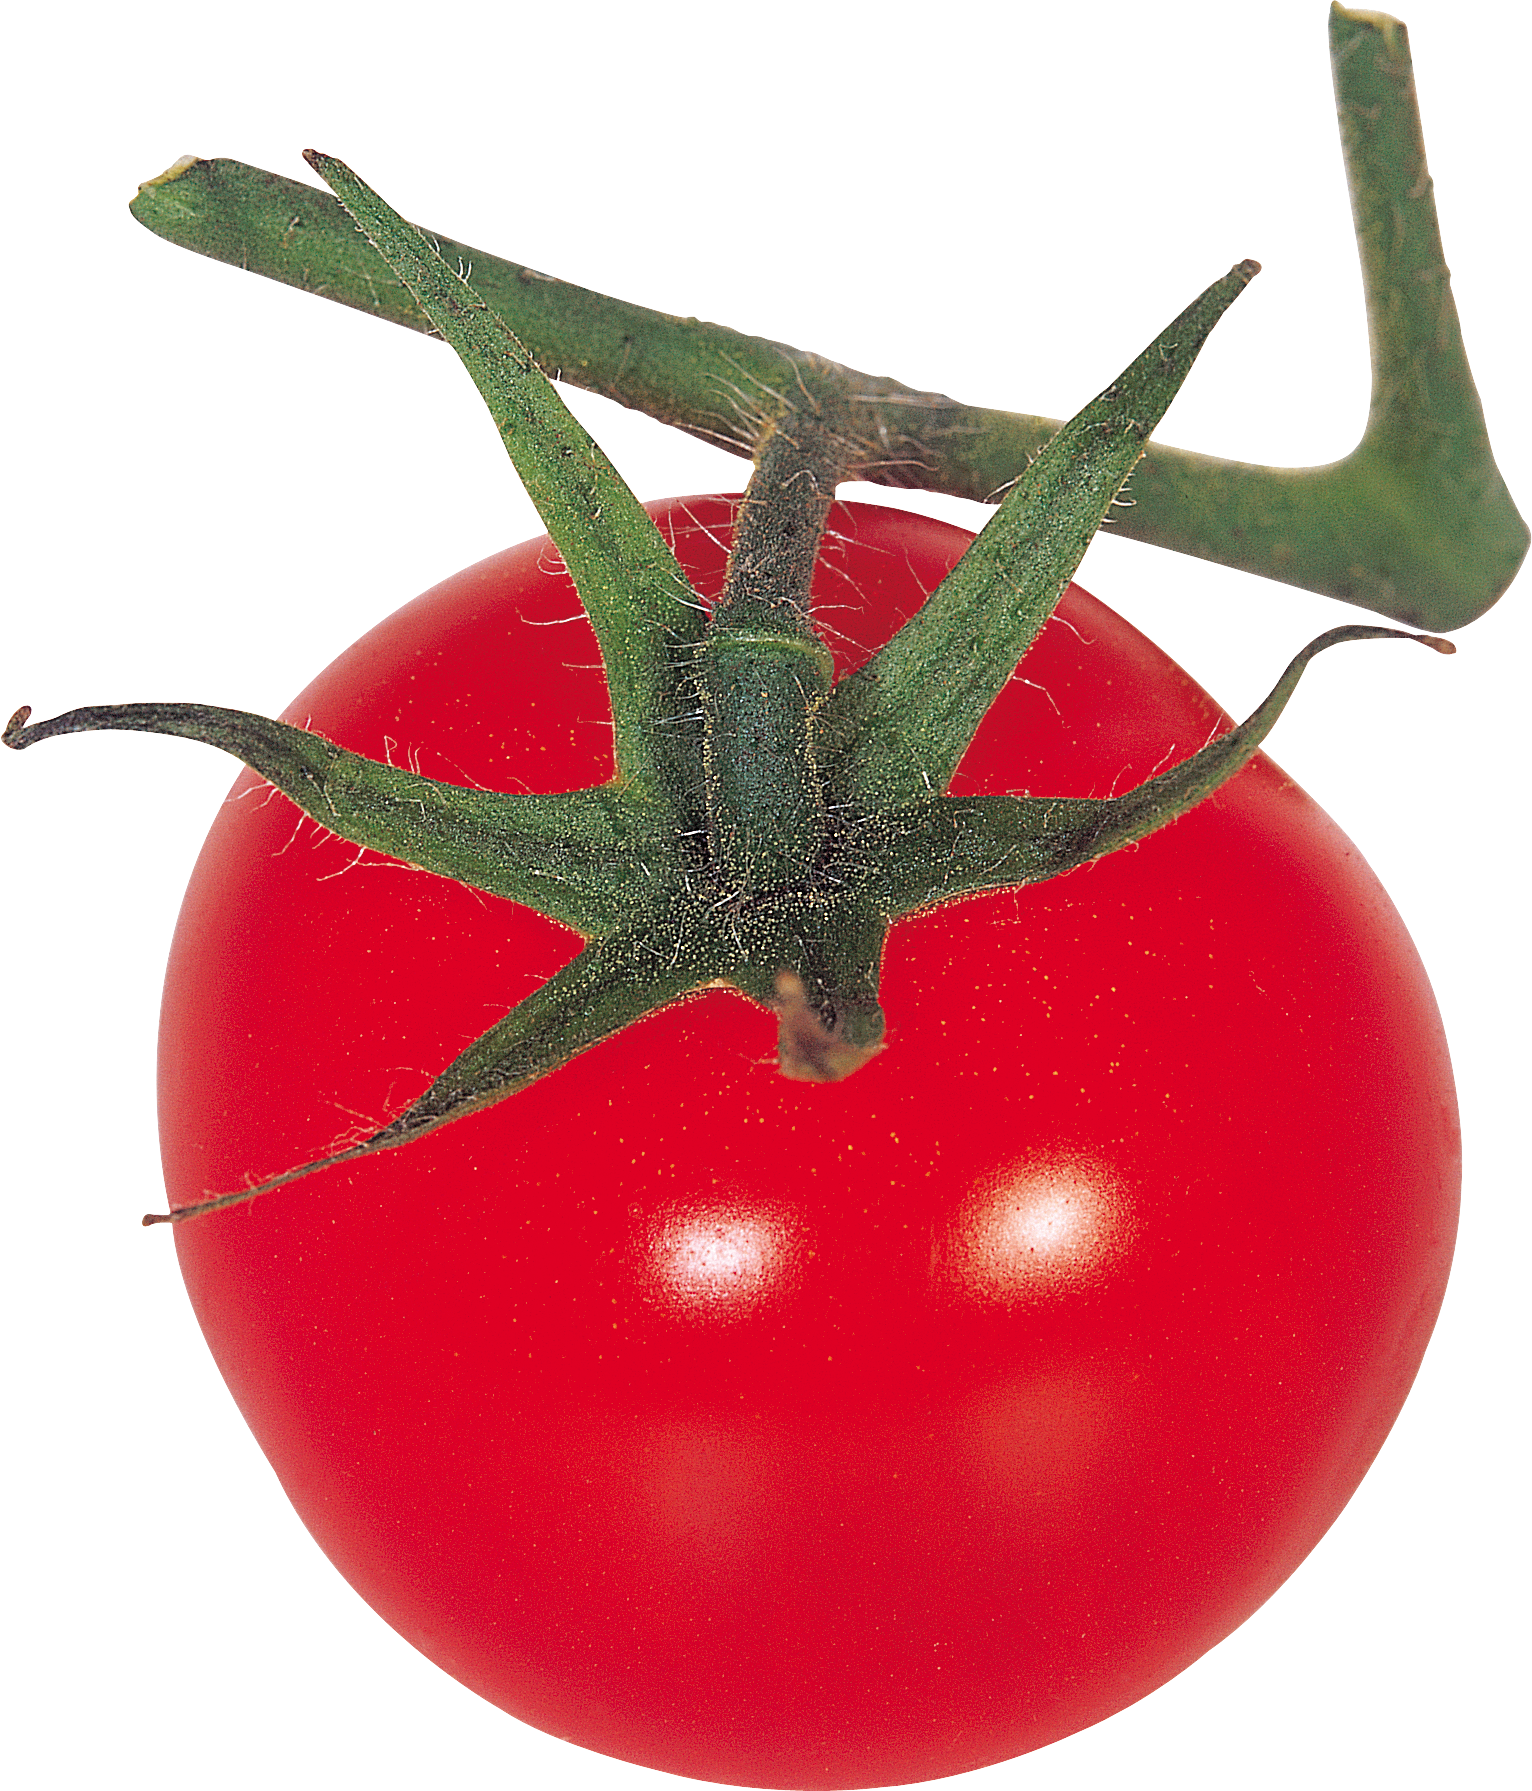 枝にトマト